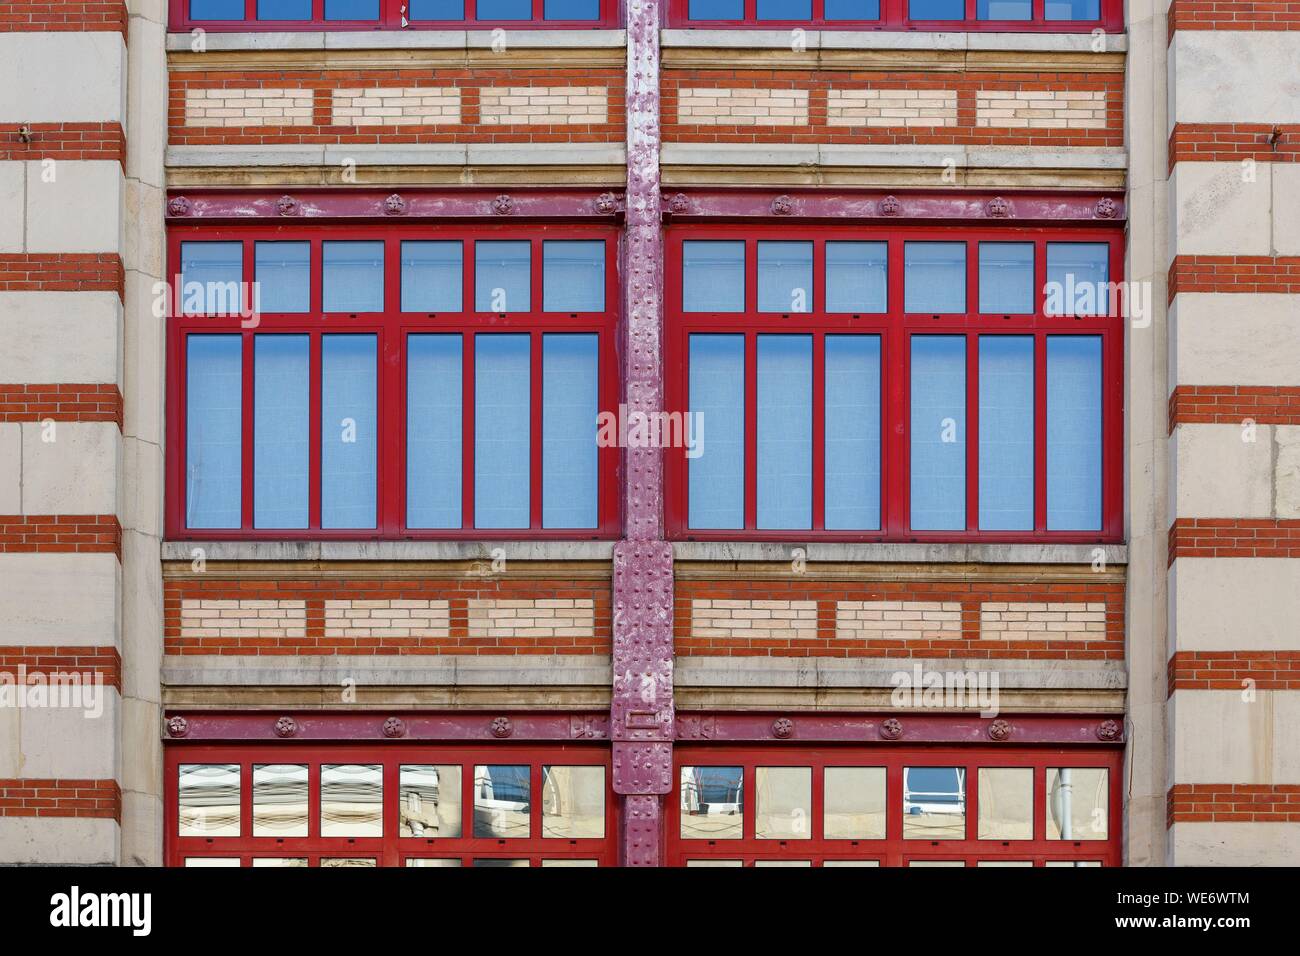 France, Meurthe et Moselle, Nancy, façade de l'Imprimerie Royer dans le style Art Nouveau par l'architecte de l'Ecole de Nancy (école de Nancy), Lucien Weissenburger en 1899-1900, rue Salpetriere s itué dans les bureaux d'aujourd'hui et appartements Banque D'Images